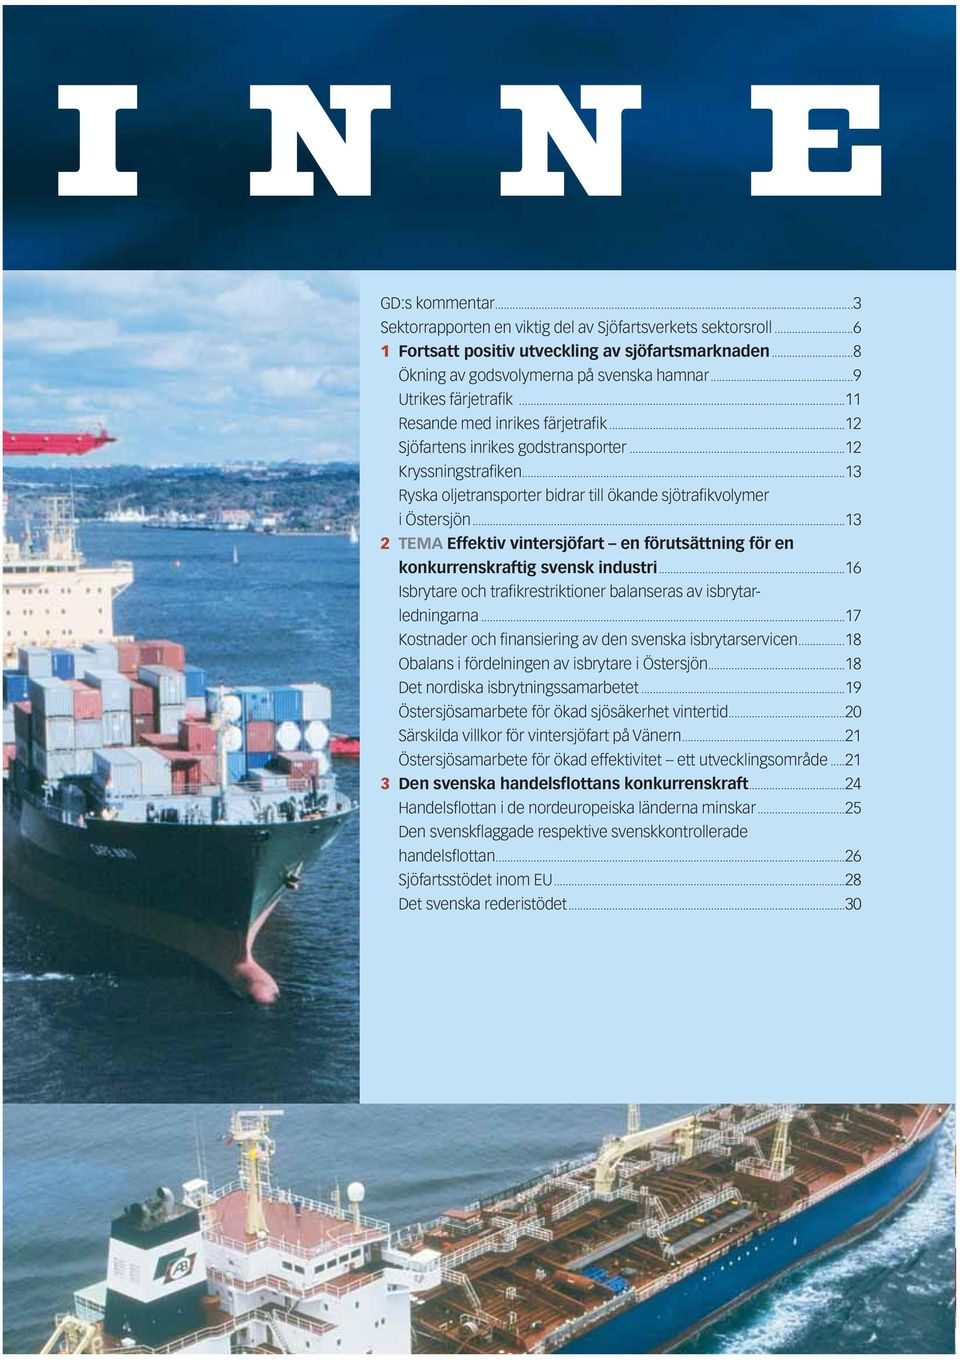 ..13 2 TEMA Effektiv vintersjöfart en förutsättning för en konkurrenskraftig svensk industri...16 Isbrytare och trafikrestriktioner balanseras av isbrytarledningarna.